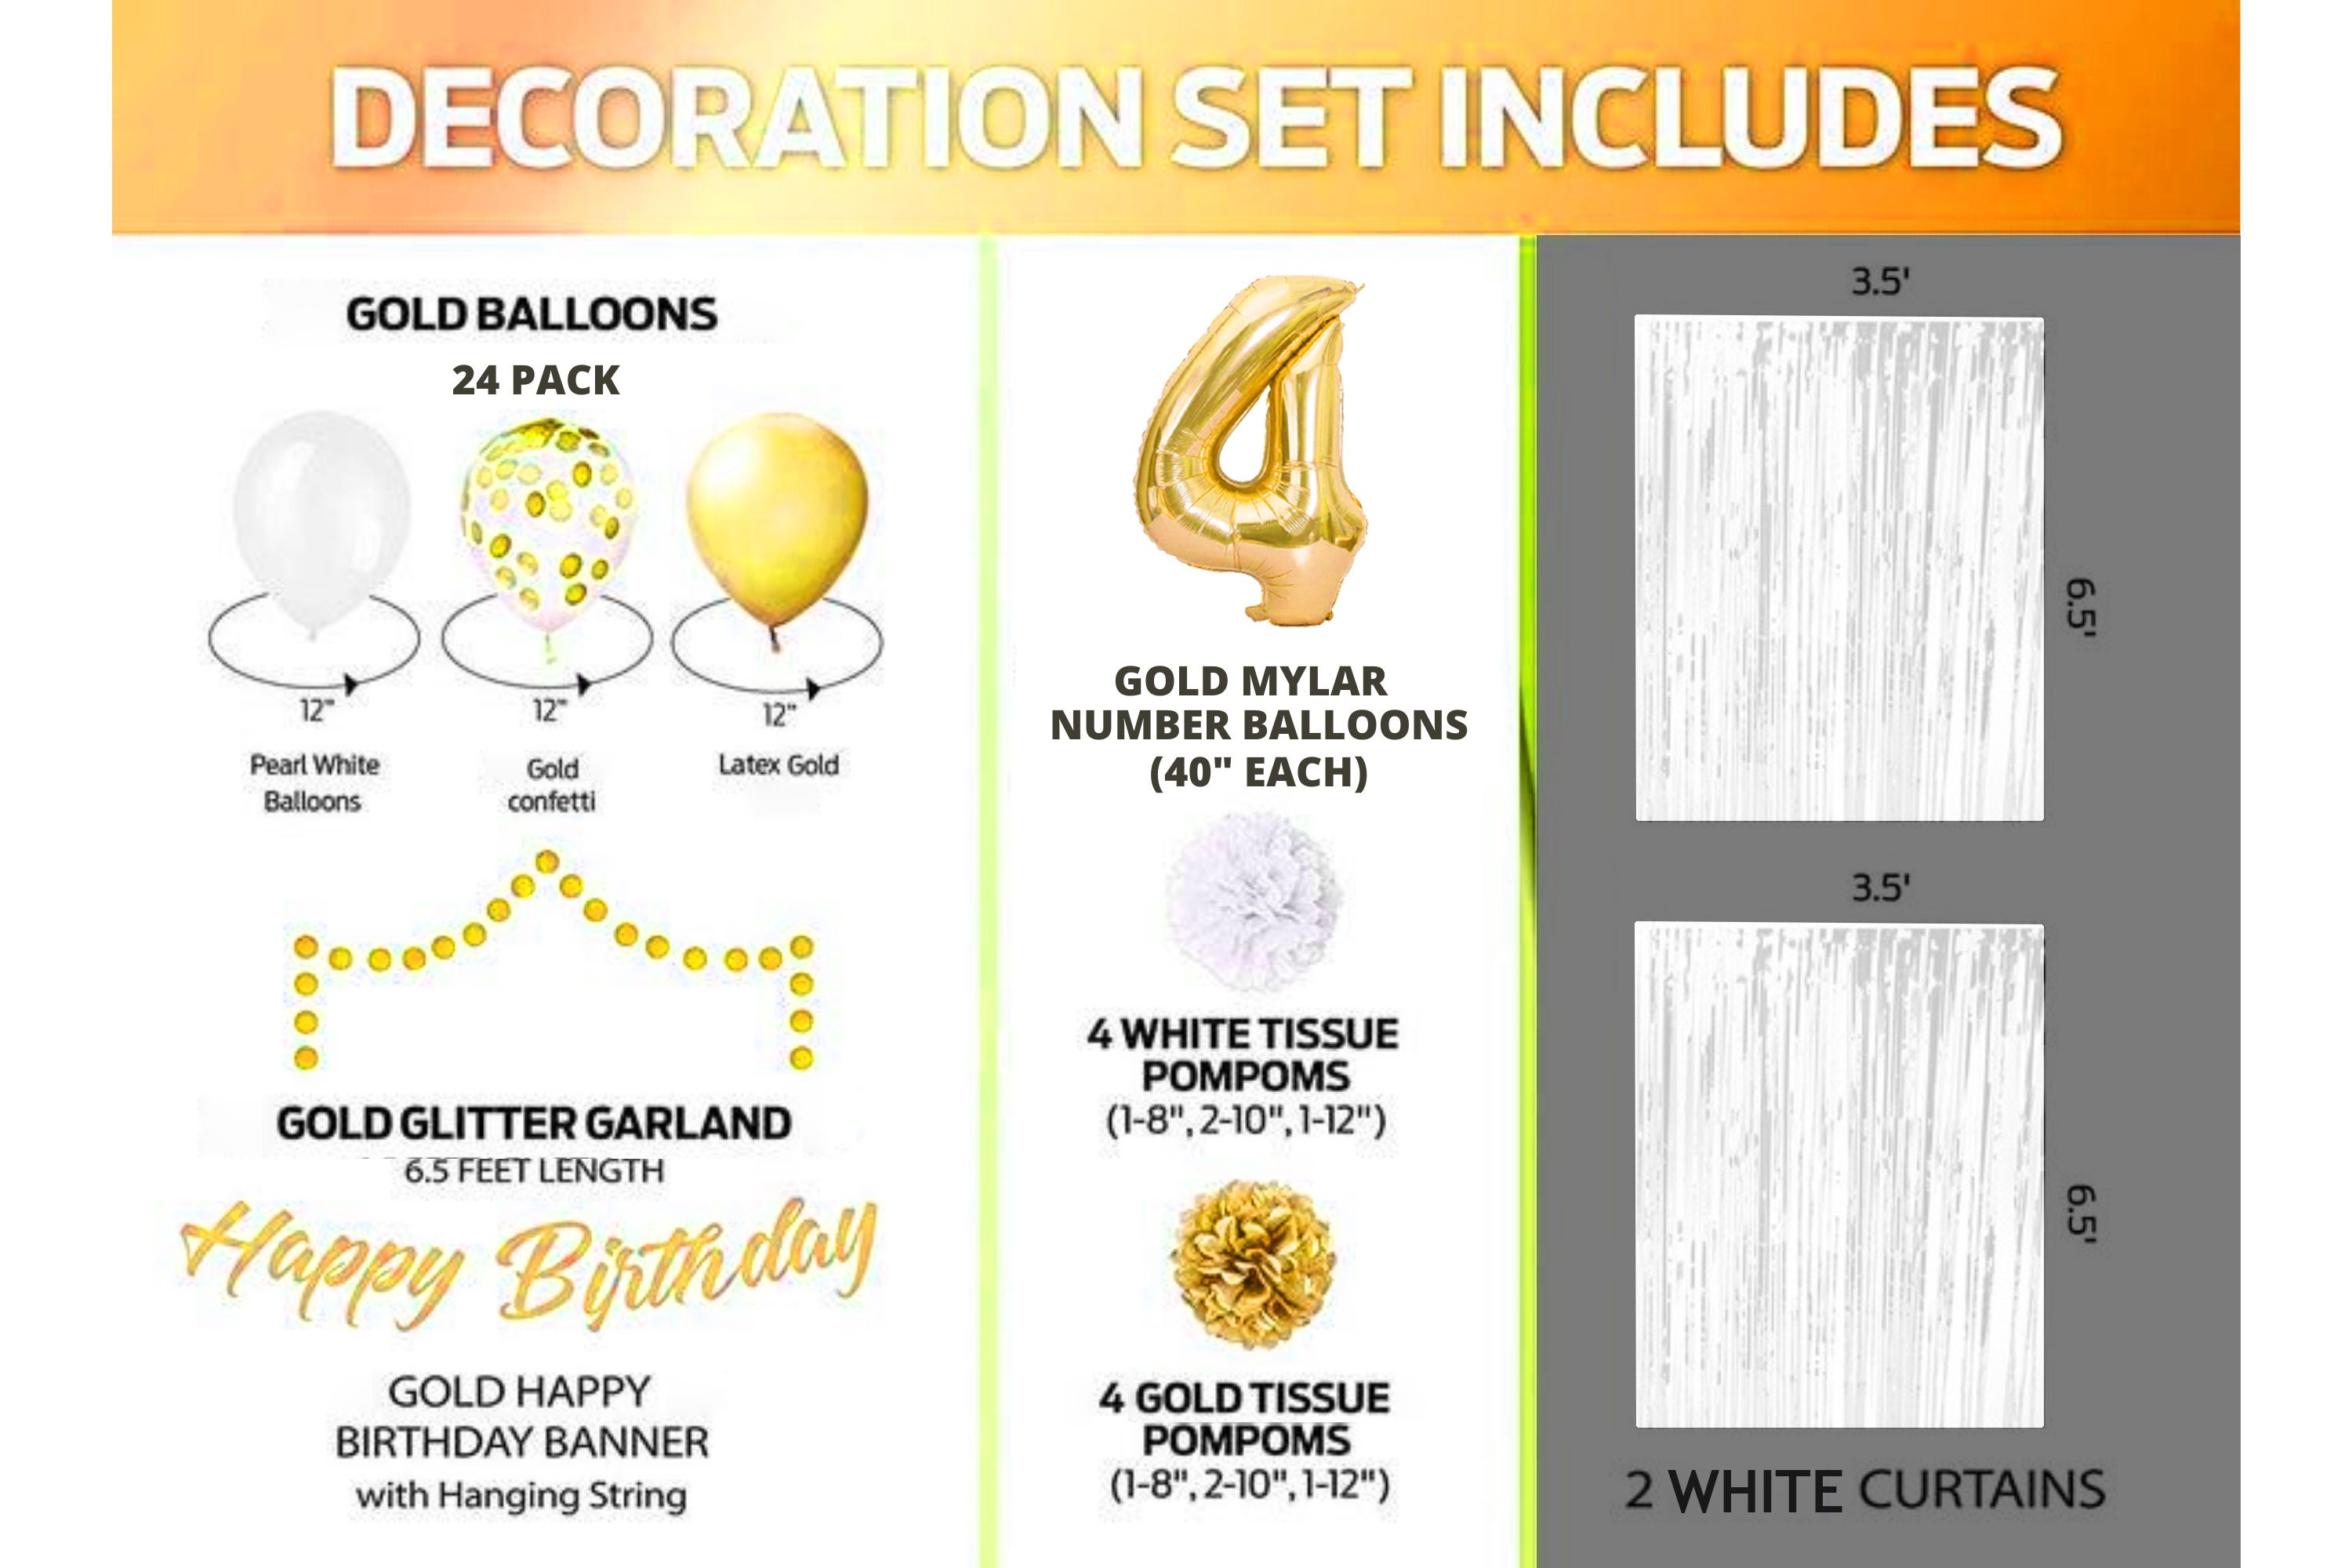 40 palloncini bianchi/nudi per il compleanno del tuo bambino - Annikids